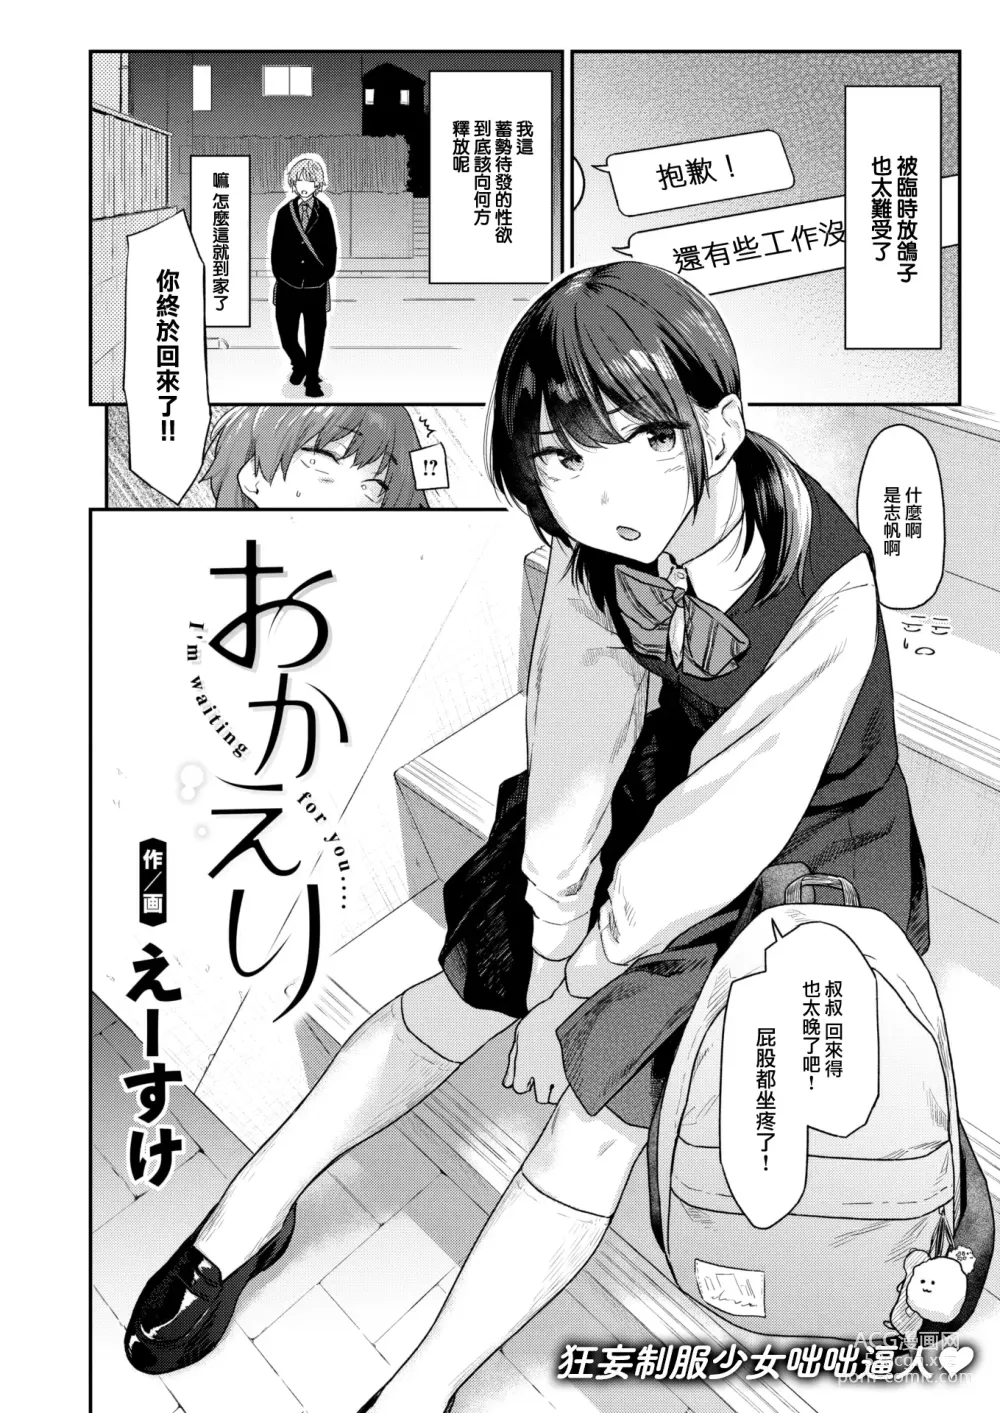 Page 3 of manga Okaeri - Im waiting for you....